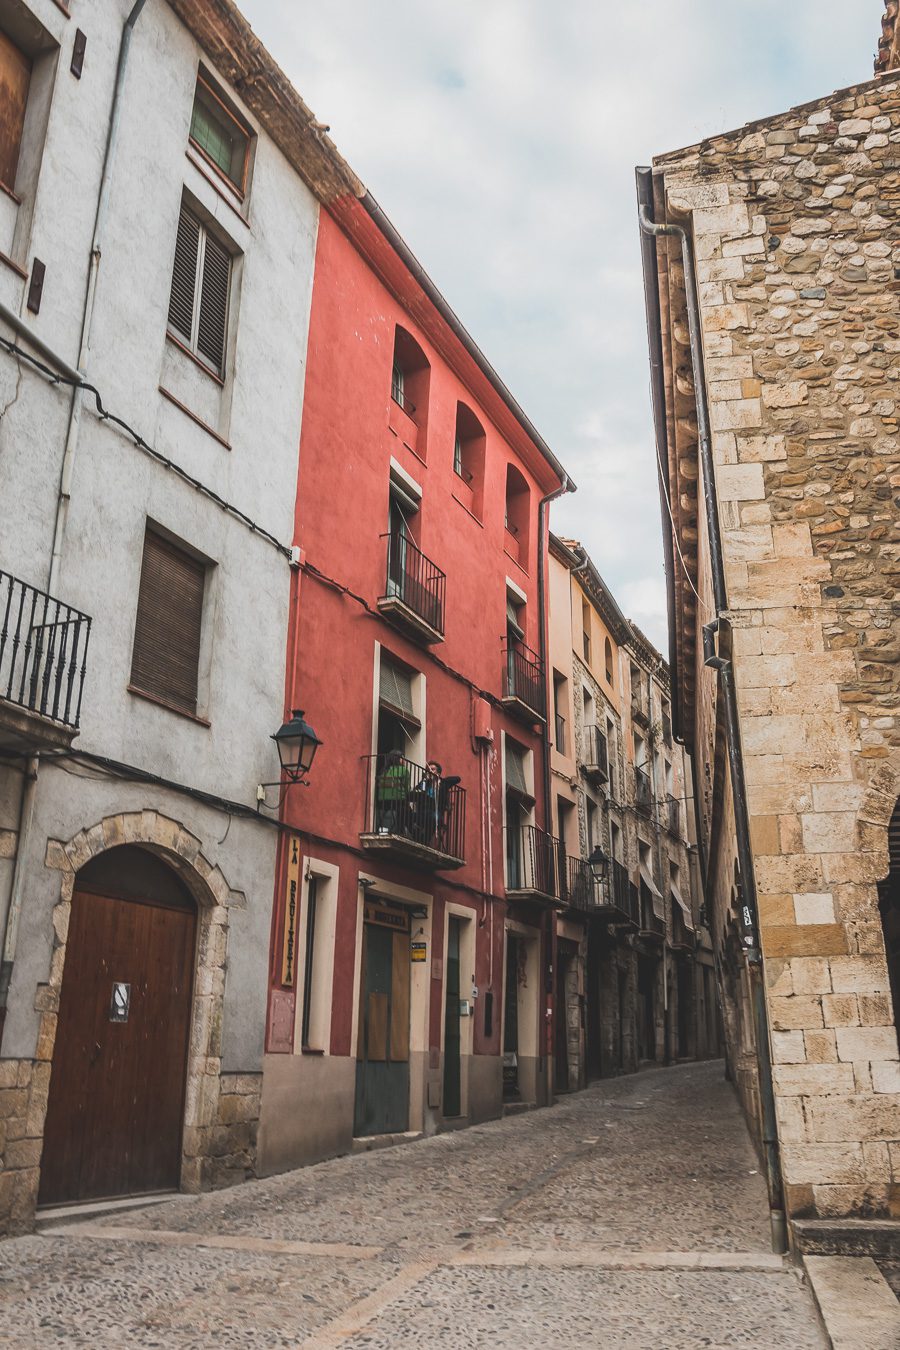 Découvrez le charme pittoresque de Besalú, l'un des plus beaux villages d'Espagne. Niché au cœur de la Catalogne, ce joyau médiéval offre un paysage enchanteur et une ambiance authentique. Partez en road trip à travers l'Espagne et explorez les trésors cachés de la région. Besalu vous séduira par son architecture unique, ses ruelles pavées et ses monuments historiques.